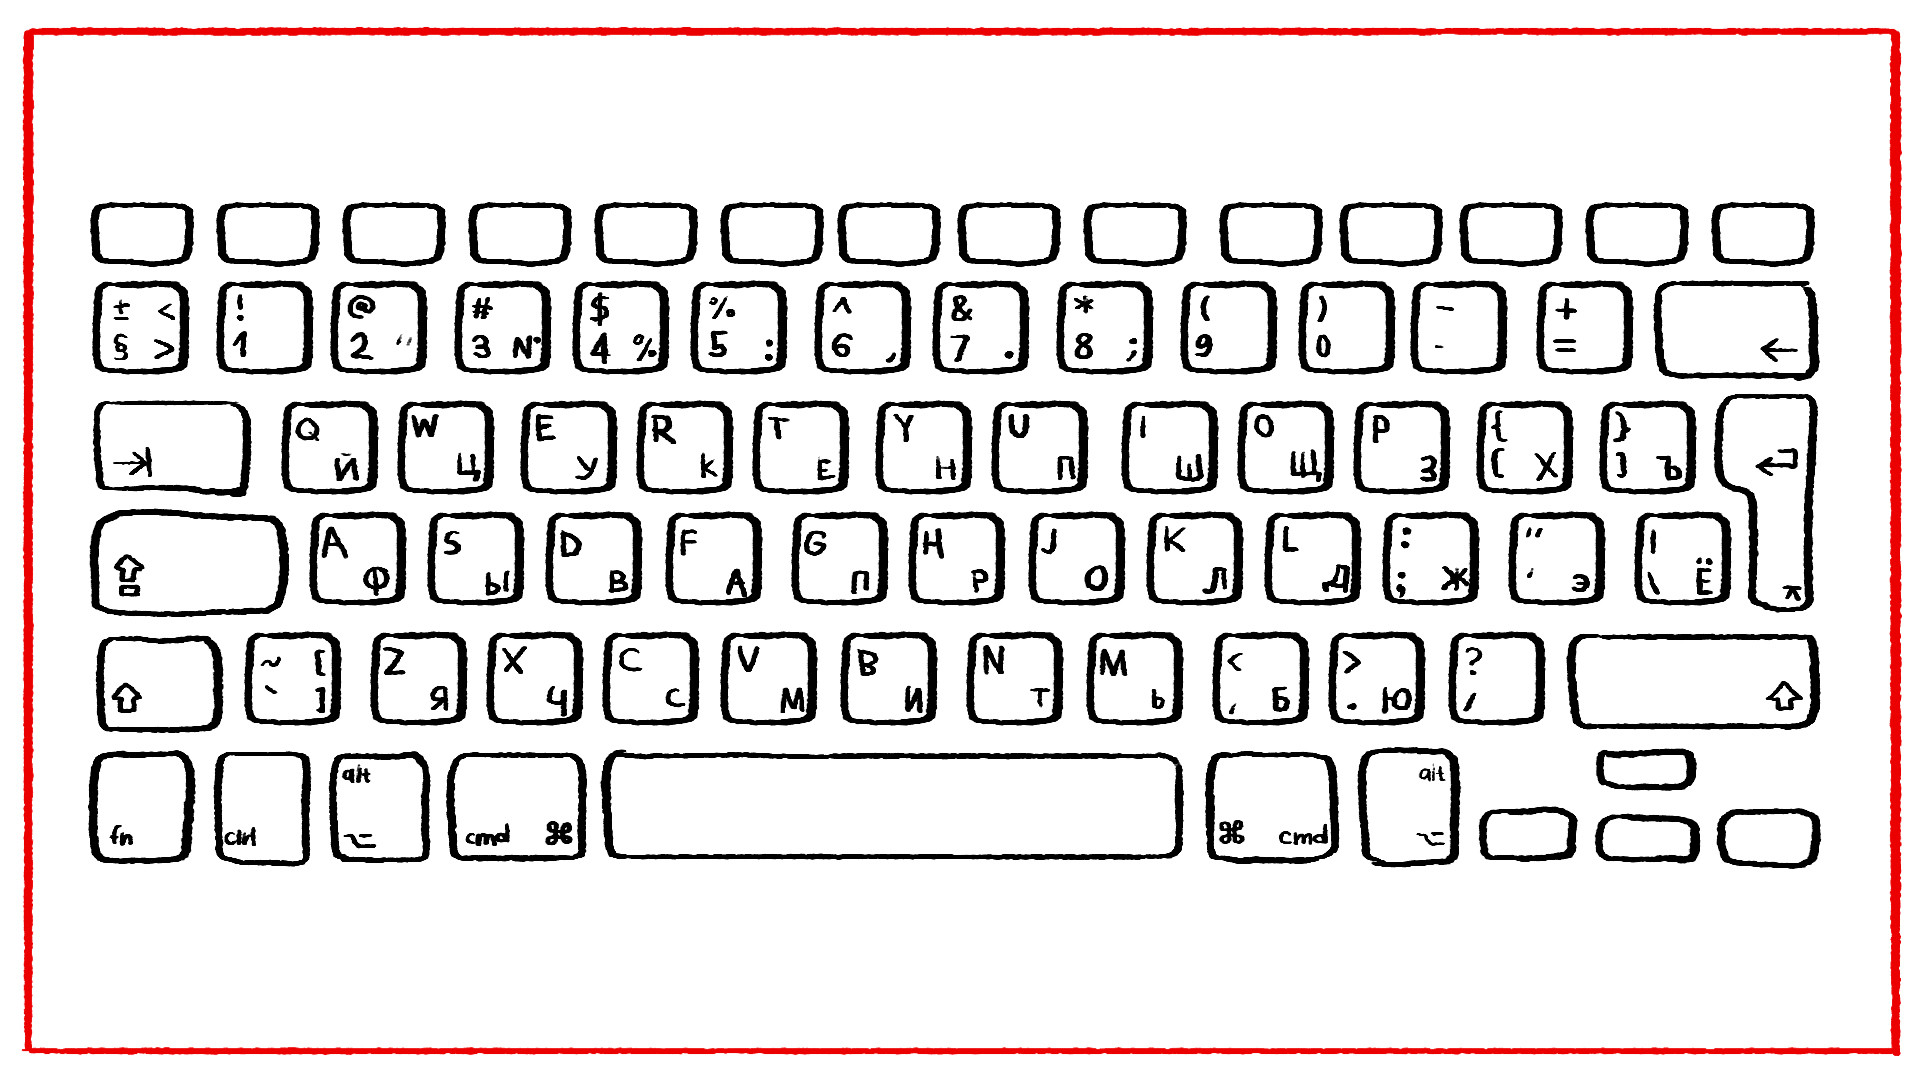 Рисунки раскладки. Компьютерная клавиатура раскладка русская и английская. Клавиатура раскраска. Распечатка клавиатуры компьютера. Клавиатура компьютера трафарет.